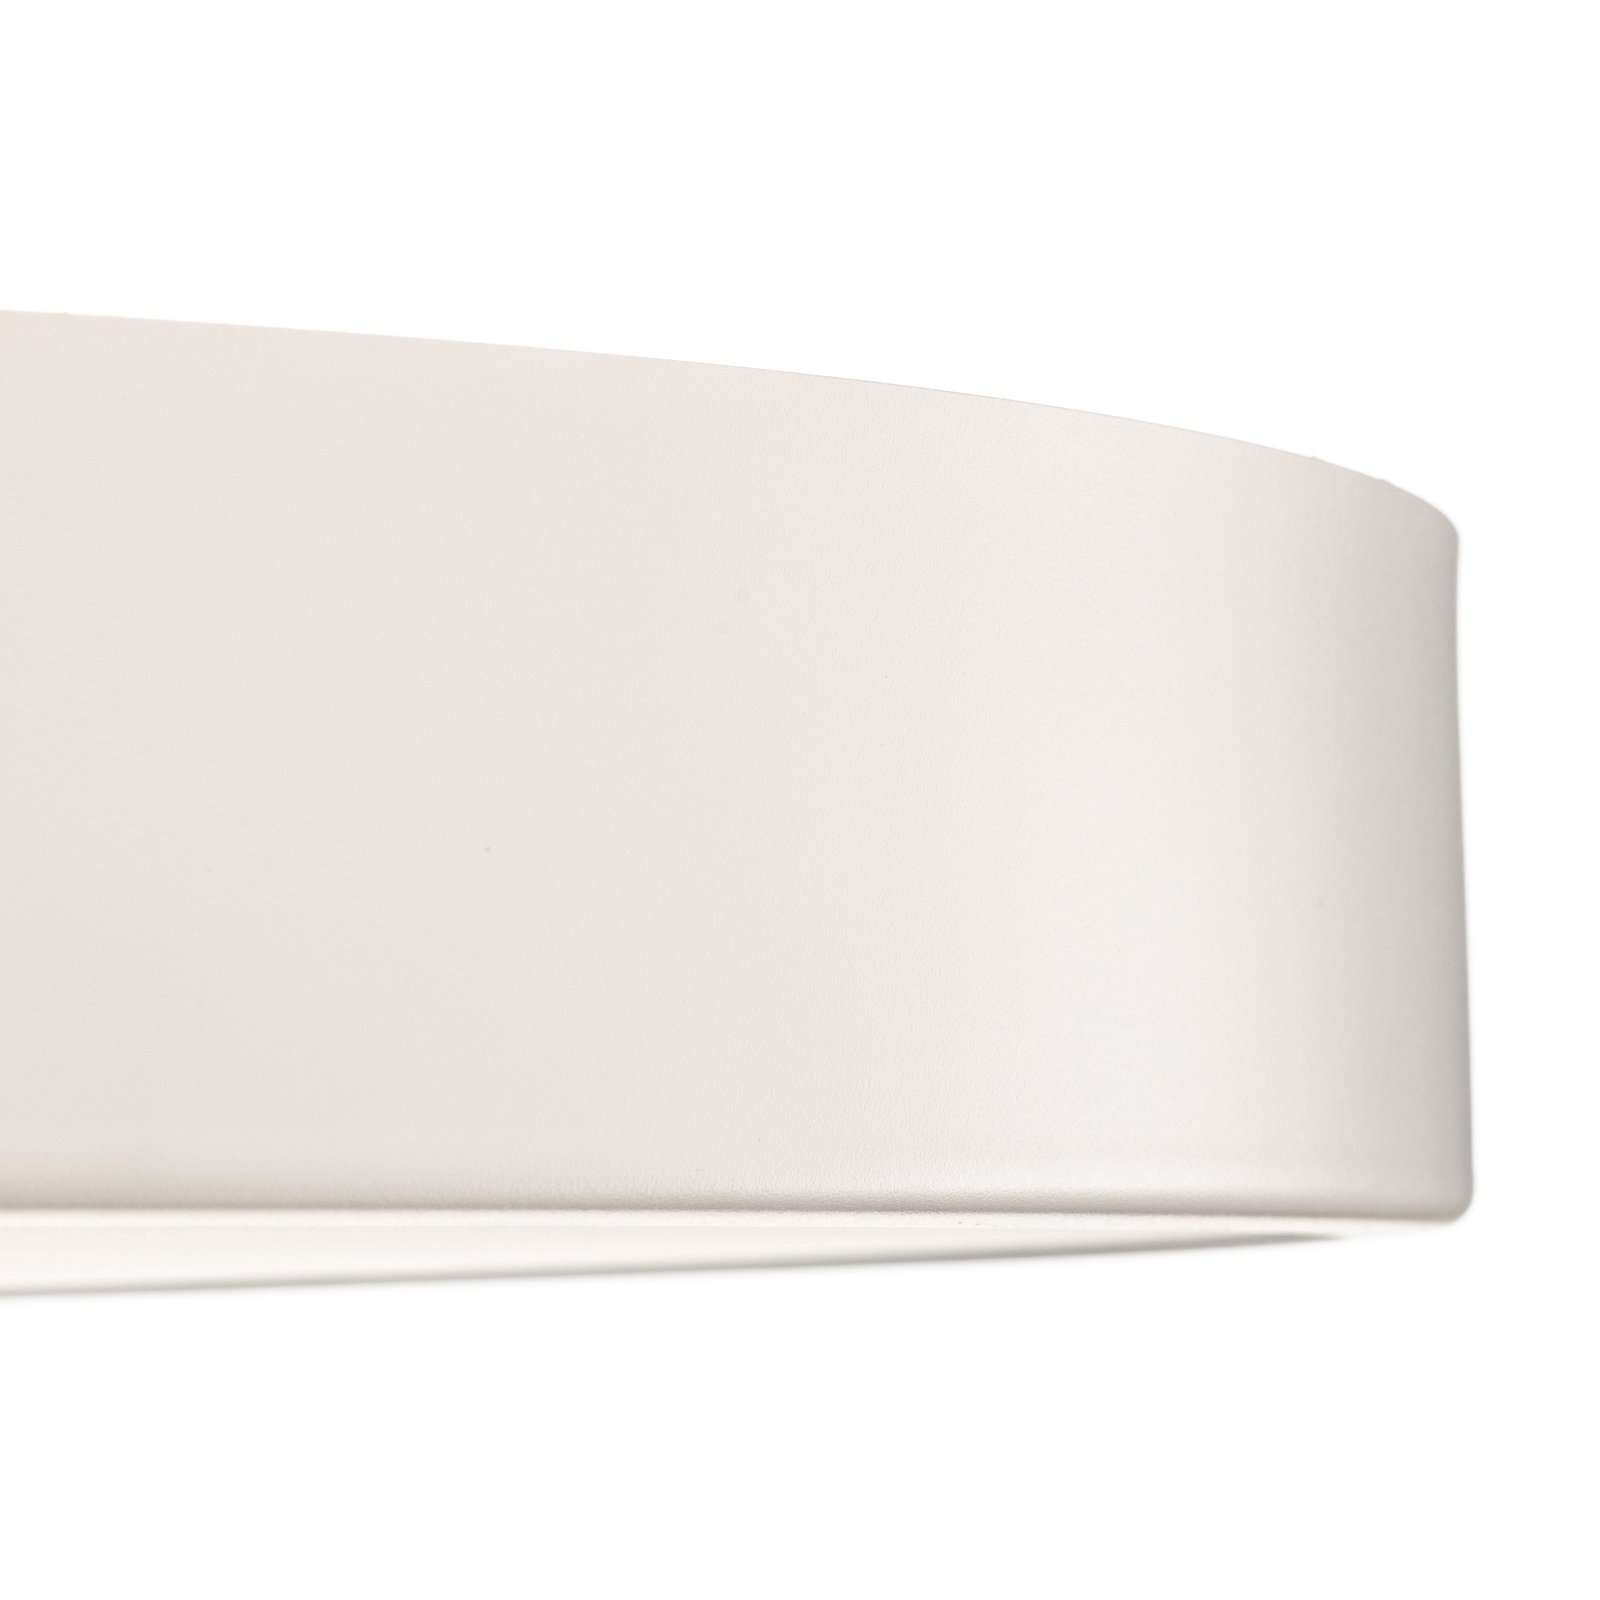 Cleo 800 ceiling light, sensor, Ø 78 cm white